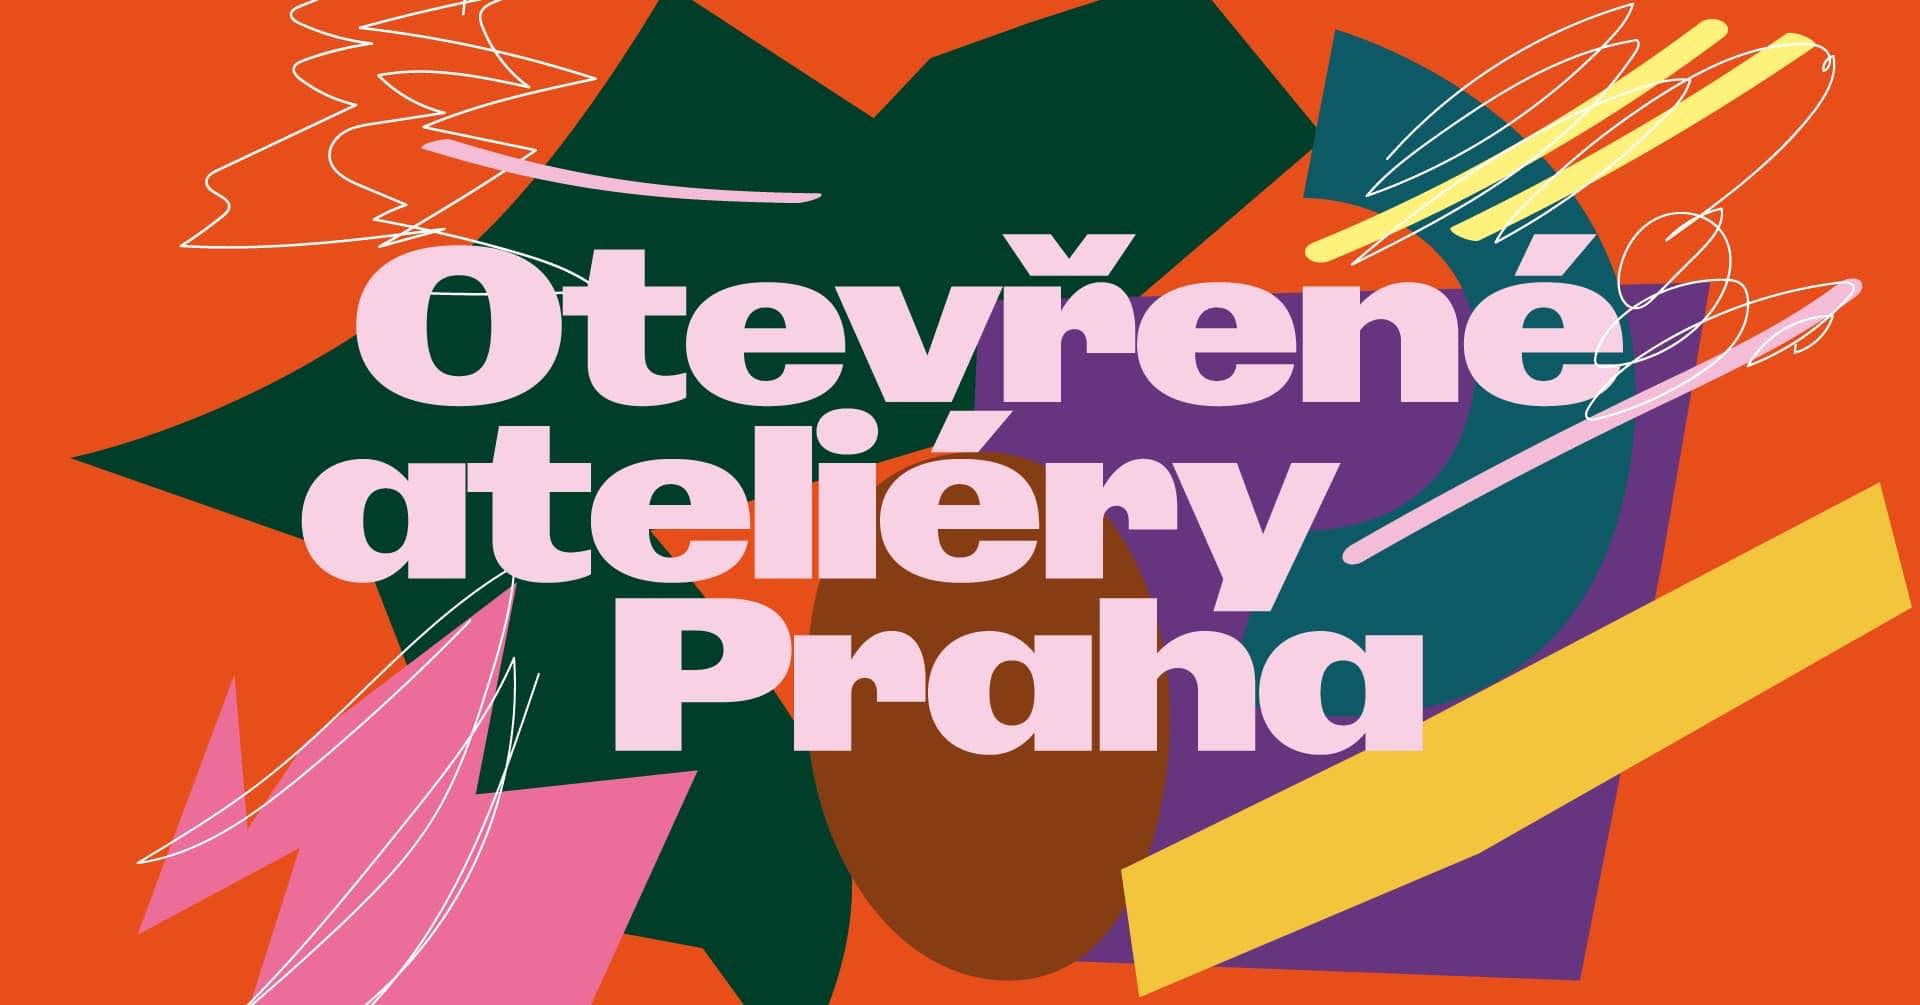 С 15 по 18 июня в Праге пройдут дни открытых дверей в студиях визуальных художников и дизайнеров